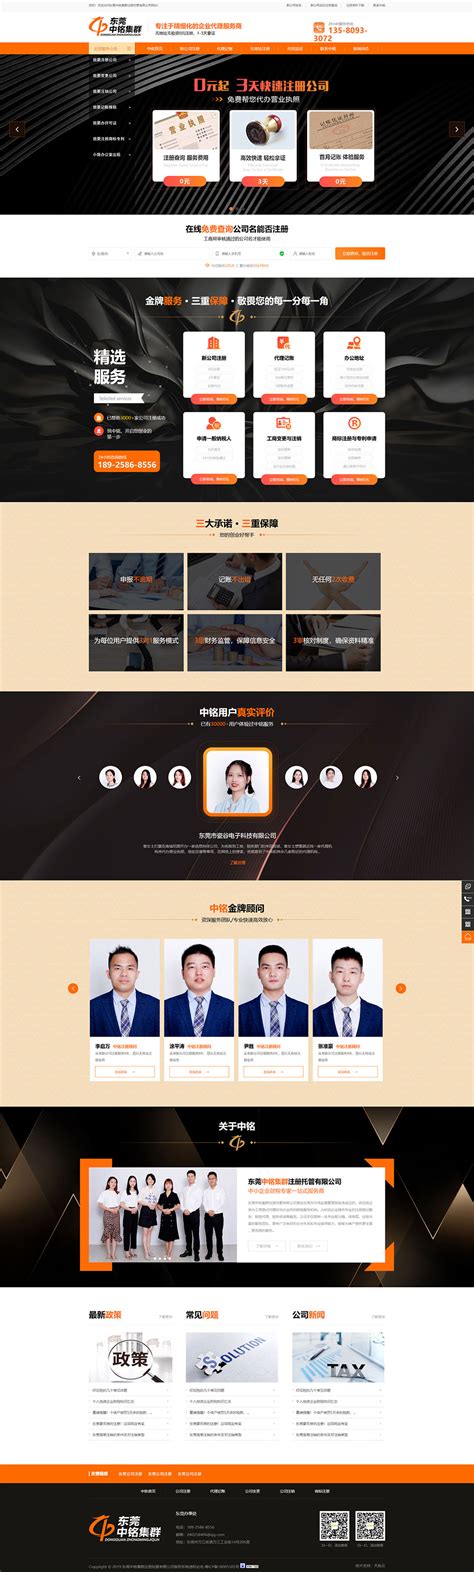 东莞网站设计公司地址